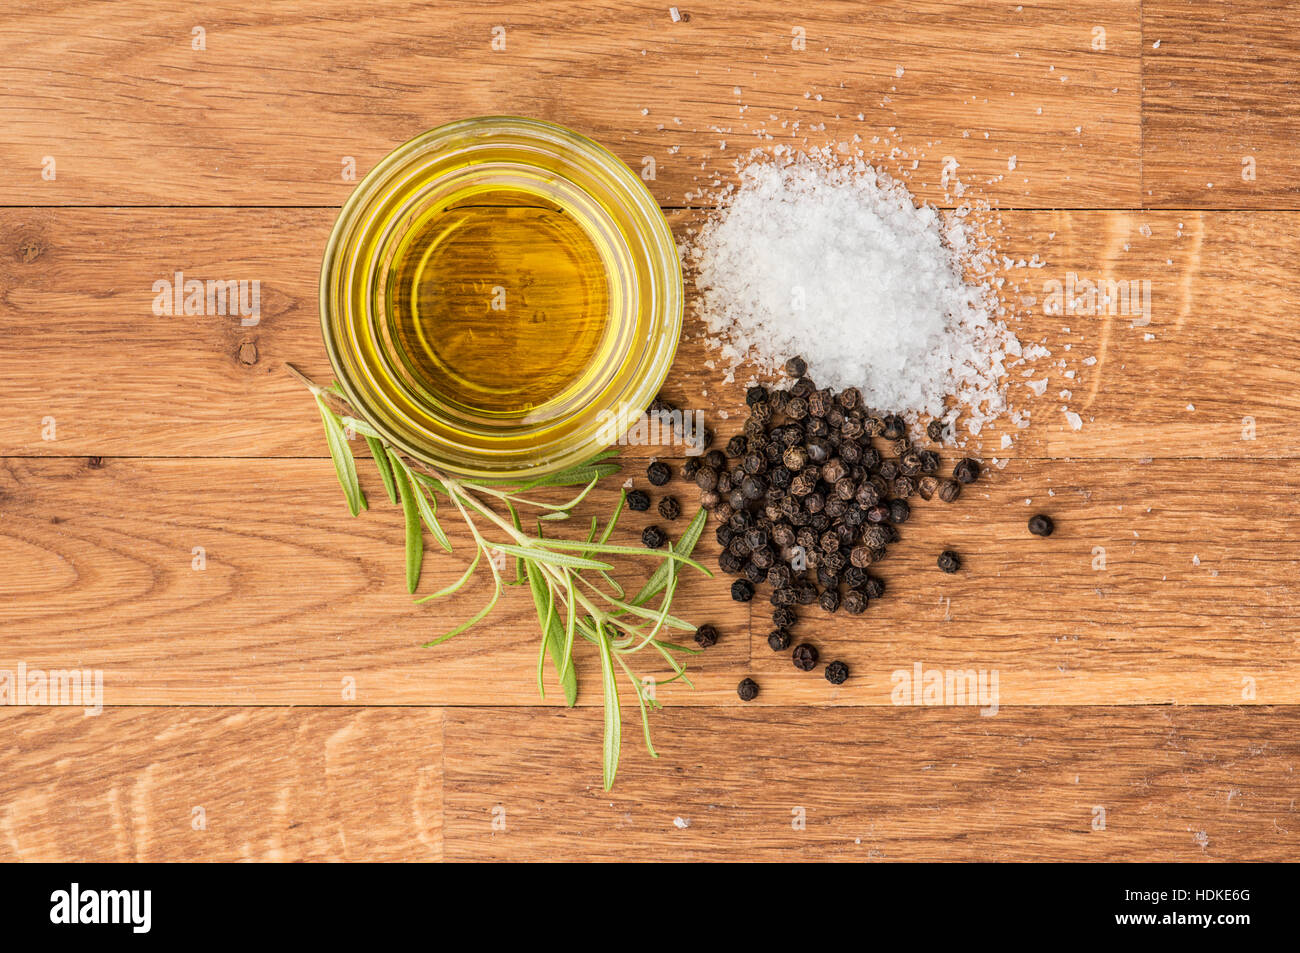 Sel, poivre noir, huile d'olive et du romarin frais sur une table en bois. Arrière-plan de l'alimentation avec l'exemplaire de l'espace. Banque D'Images